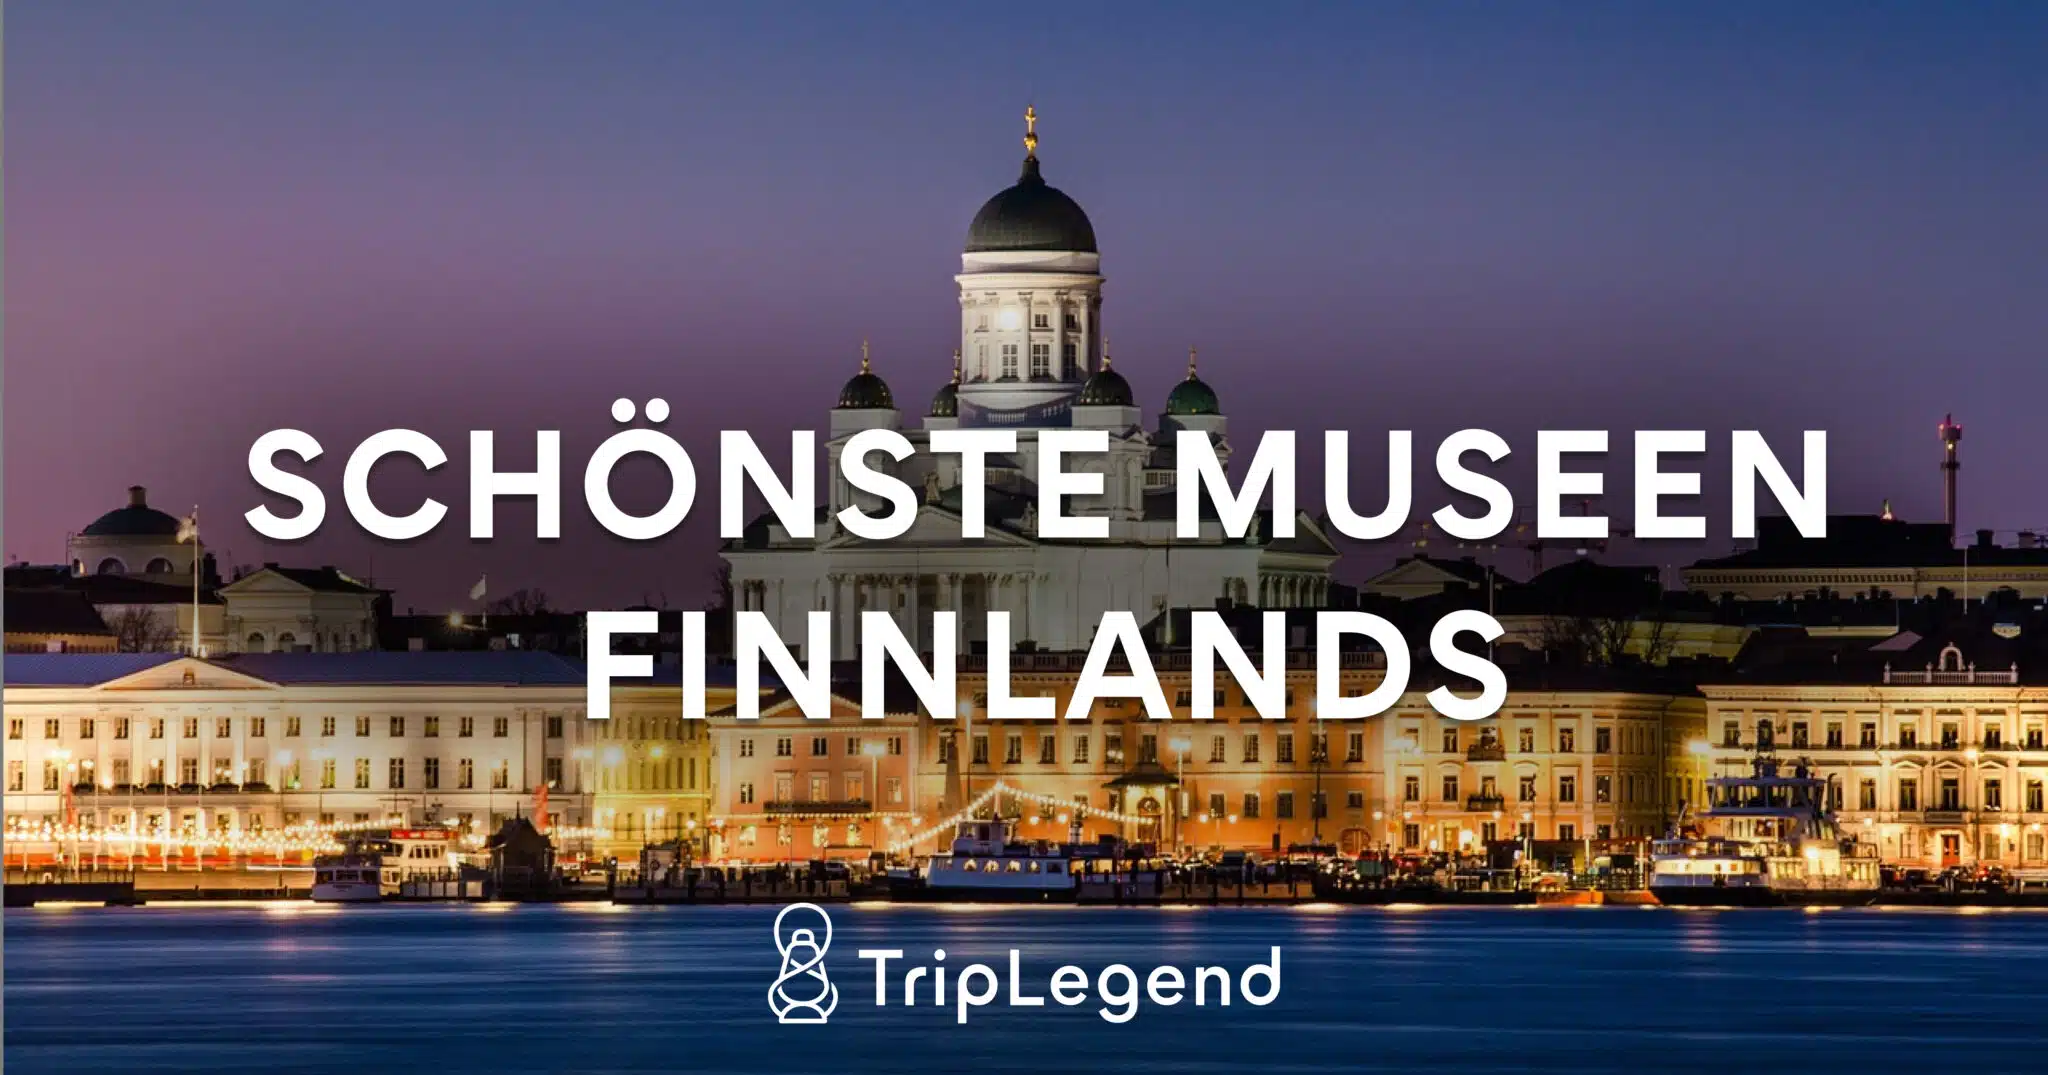 Les plus beaux musées de Finlande Scaled.jpg